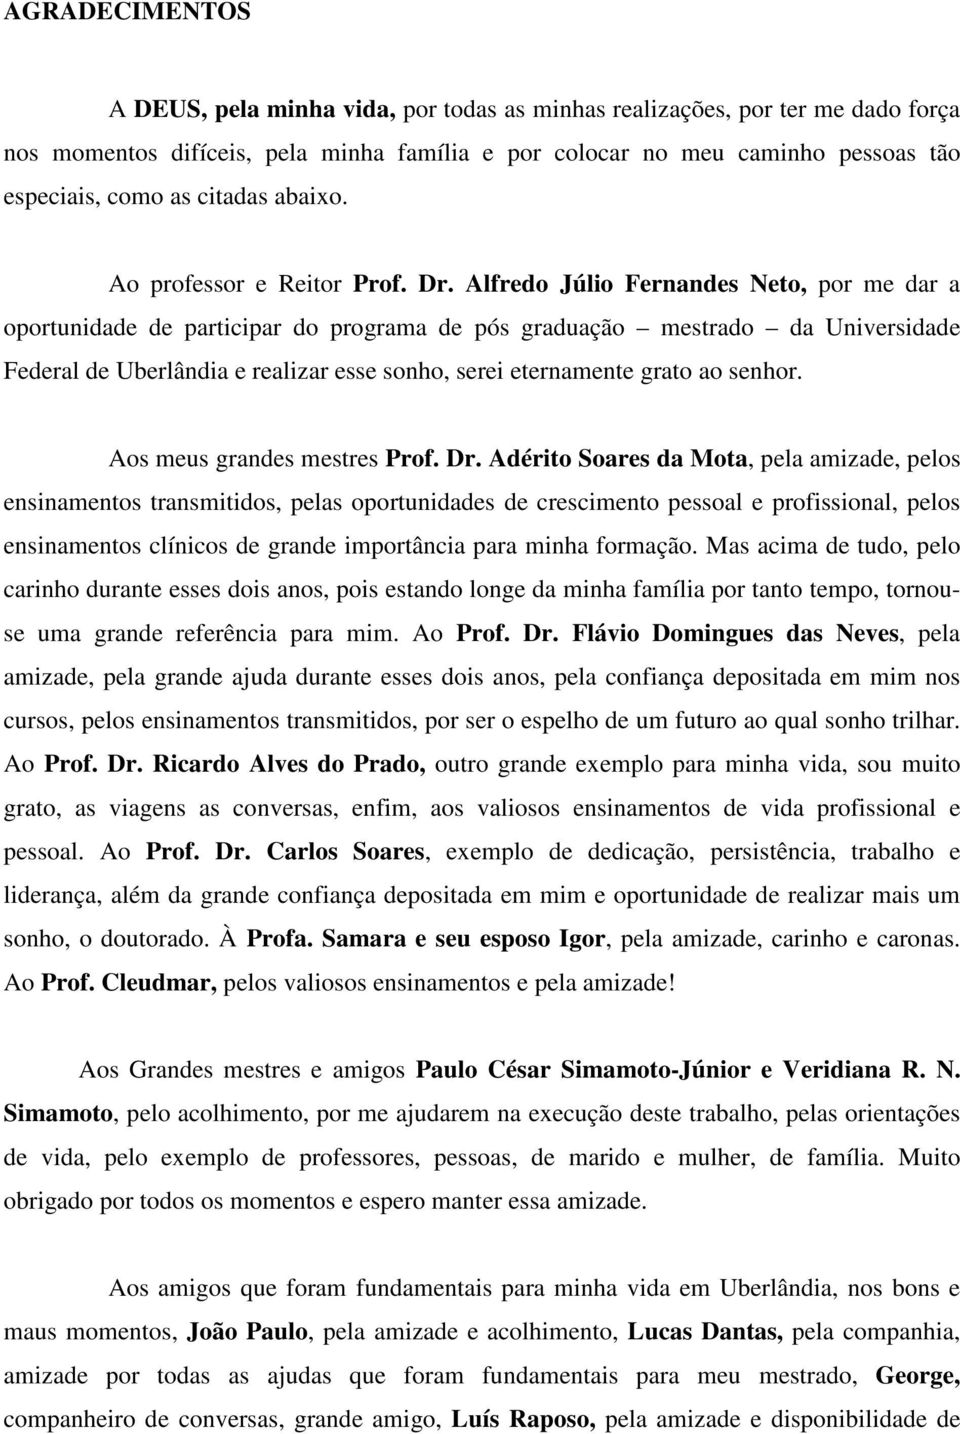 Alfredo Júlio Fernandes Neto, por me dar a oportunidade de participar do programa de pós graduação mestrado da Universidade Federal de Uberlândia e realizar esse sonho, serei eternamente grato ao